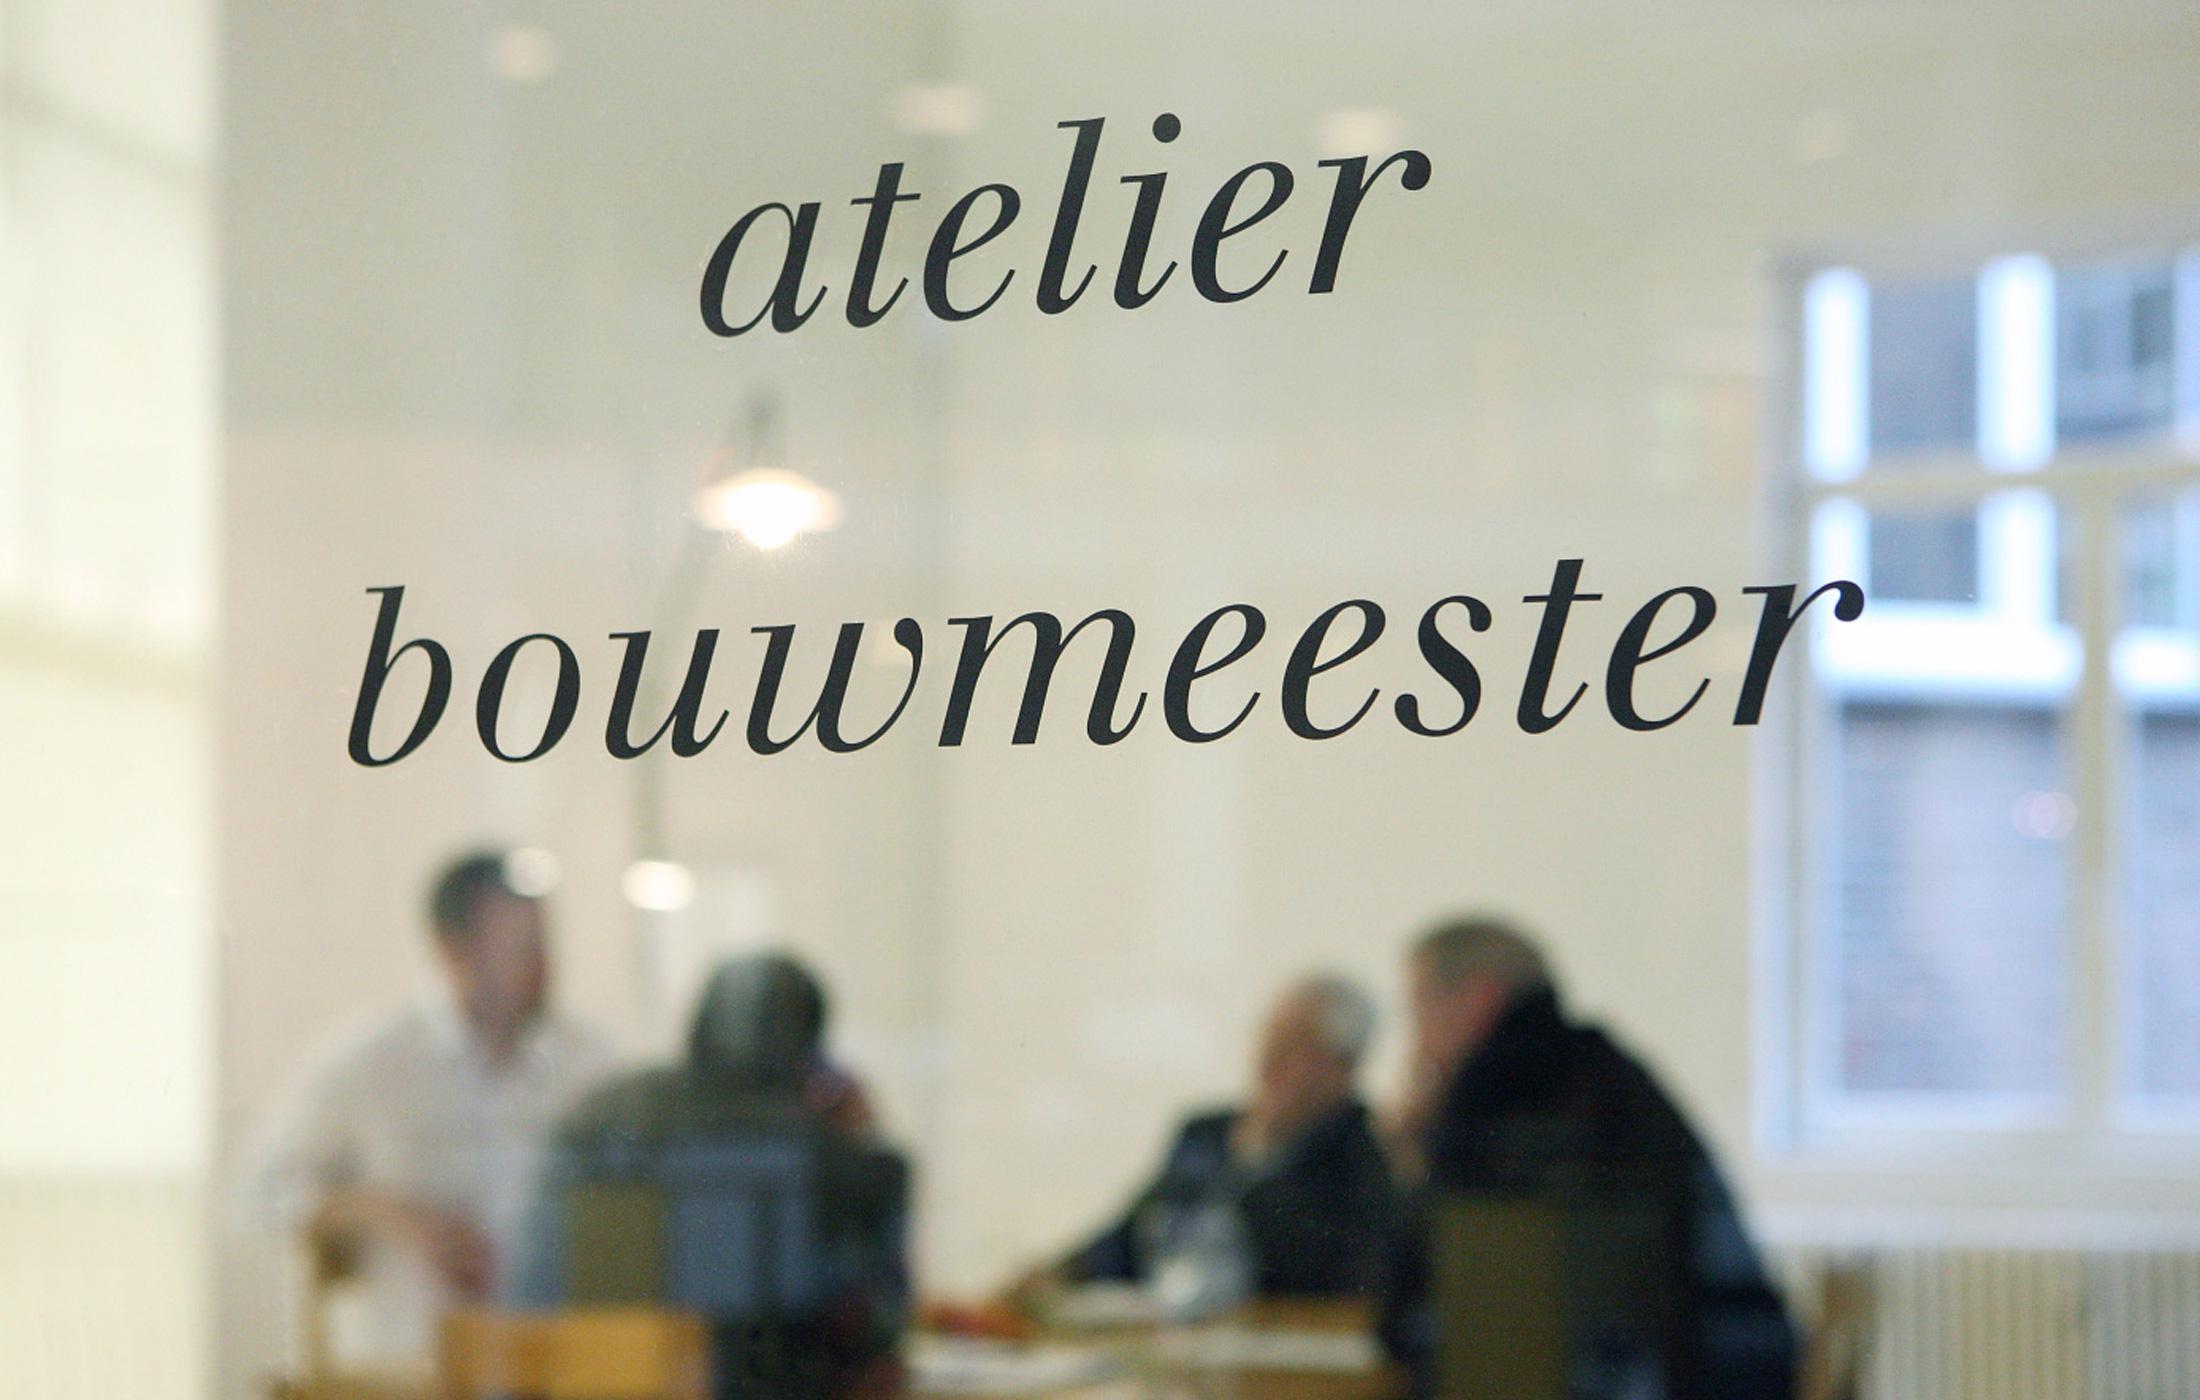 Atelier Bouwmeester ©Filip Dujardin